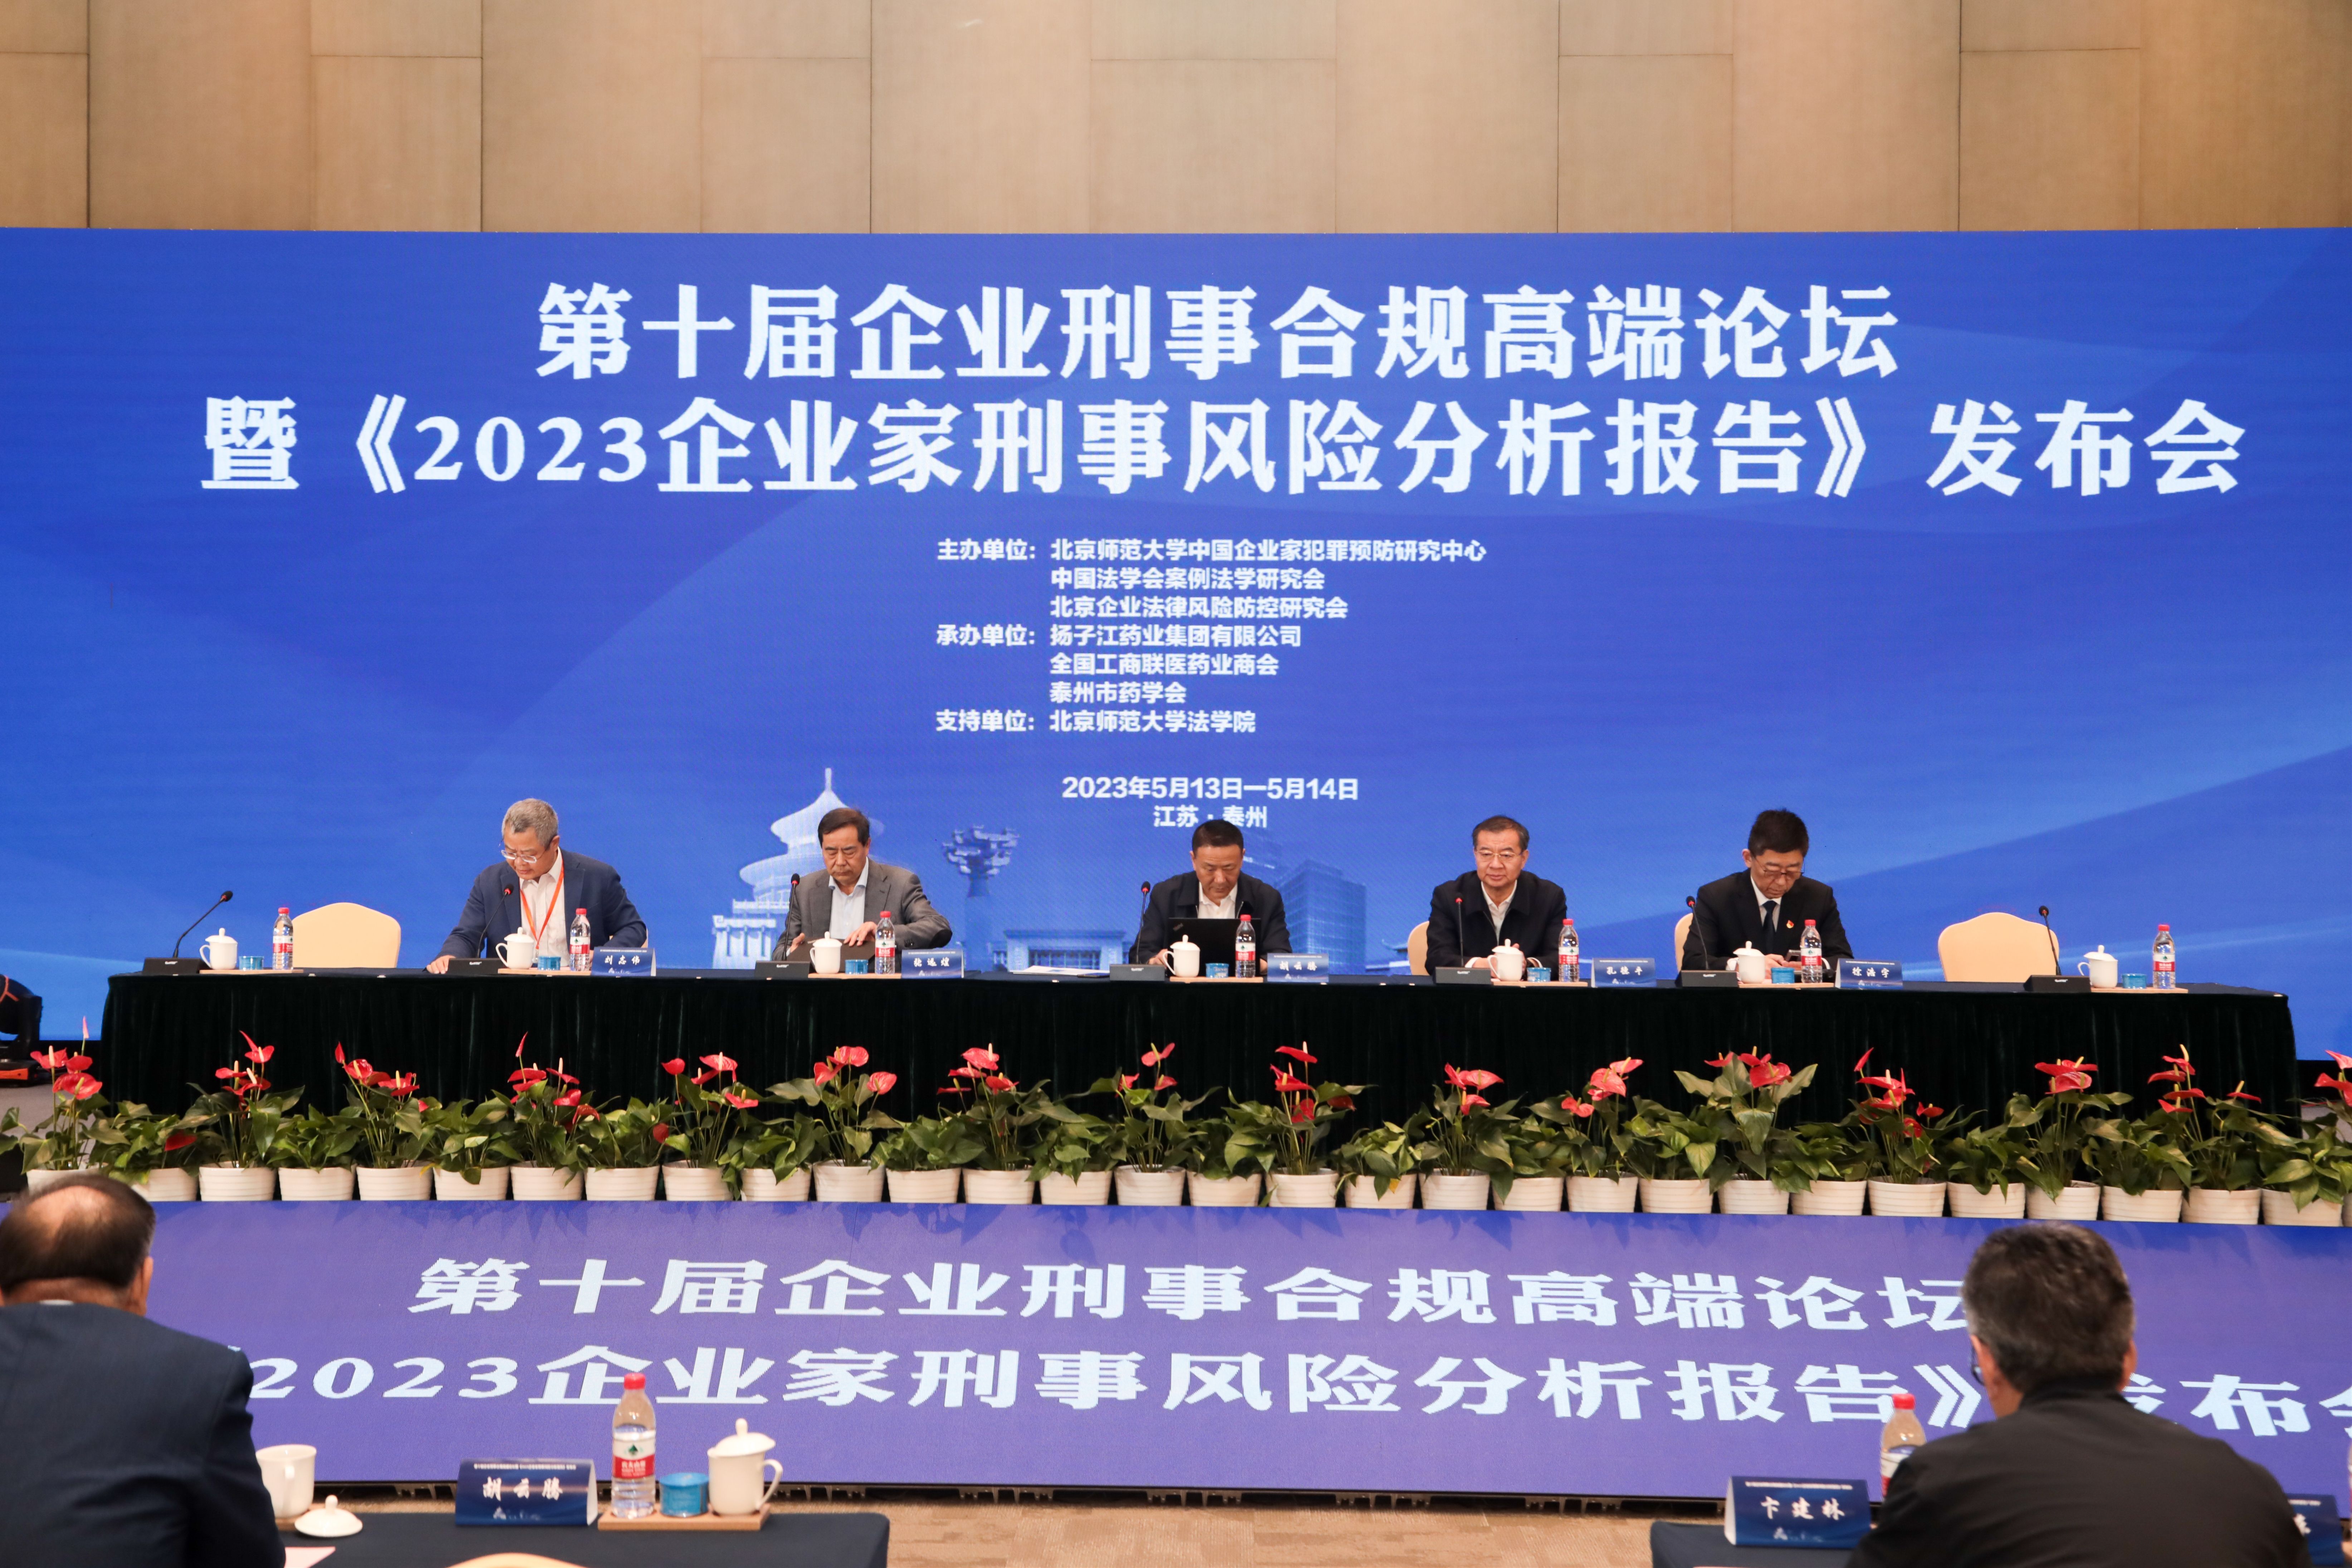 第十届企业刑事合规高端论坛在扬子江药业集团举办